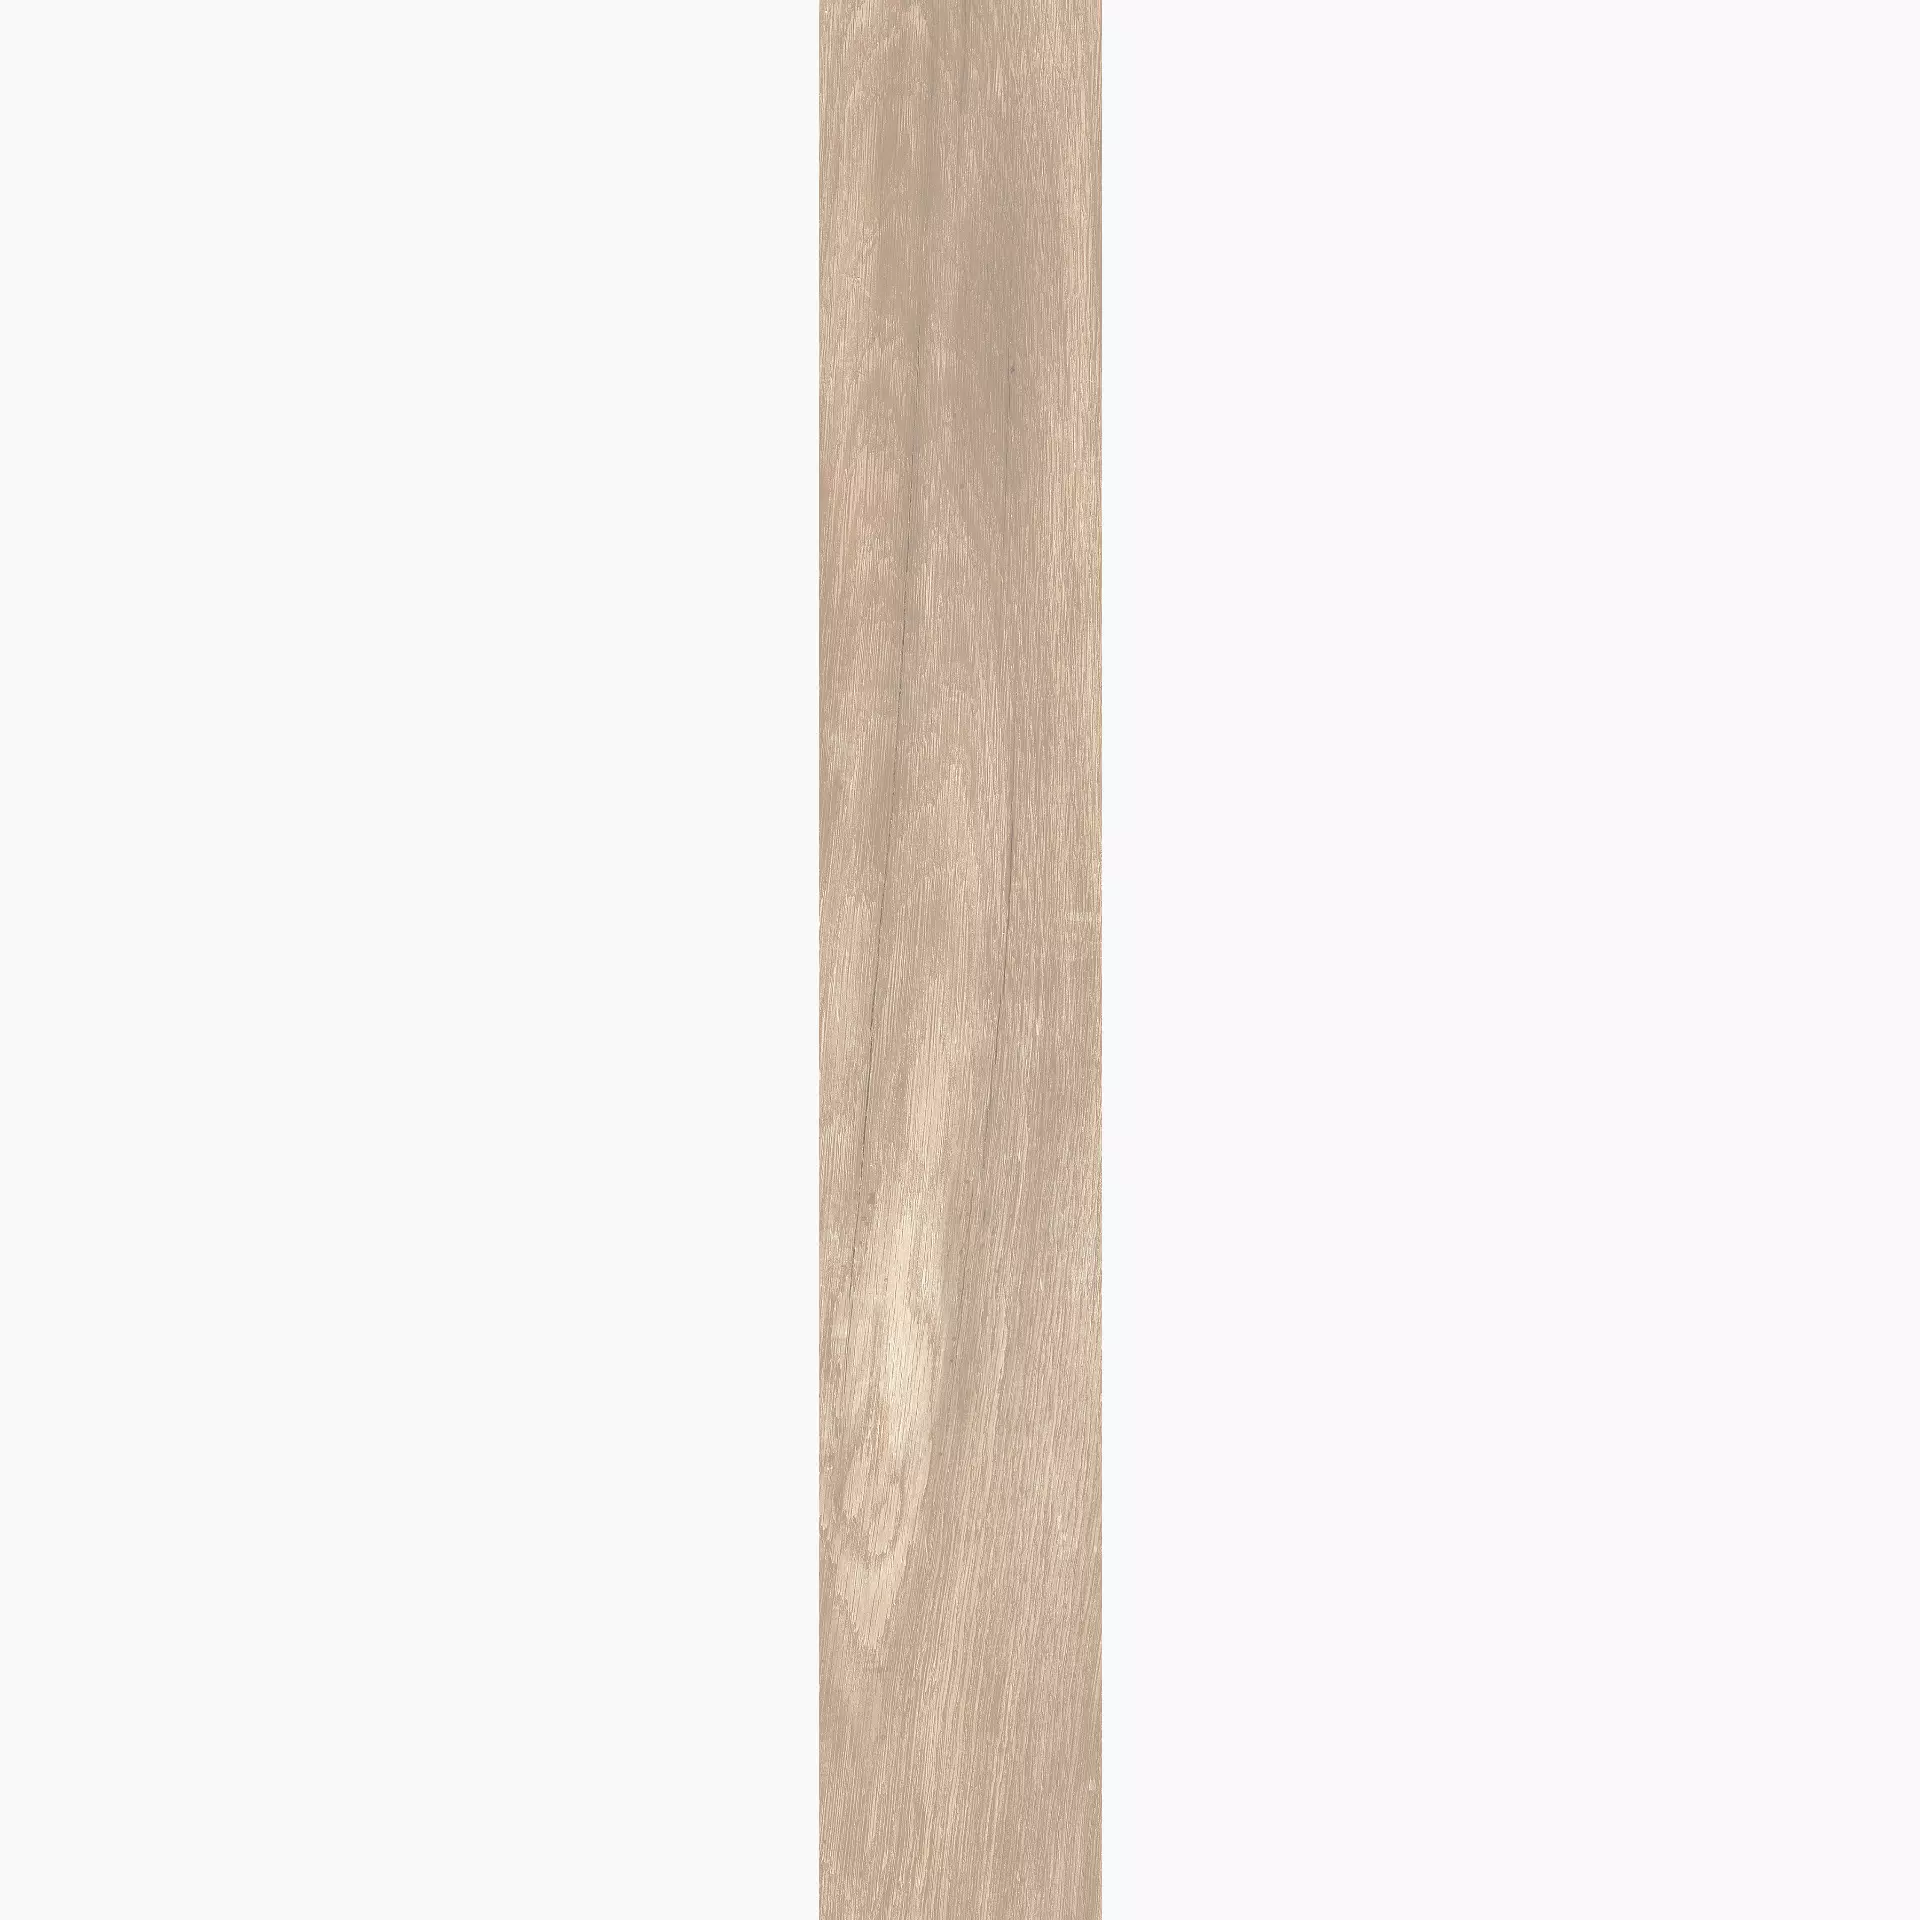 KRONOS Woodside Oak Grip 8054 26,5x180cm rectified 20mm